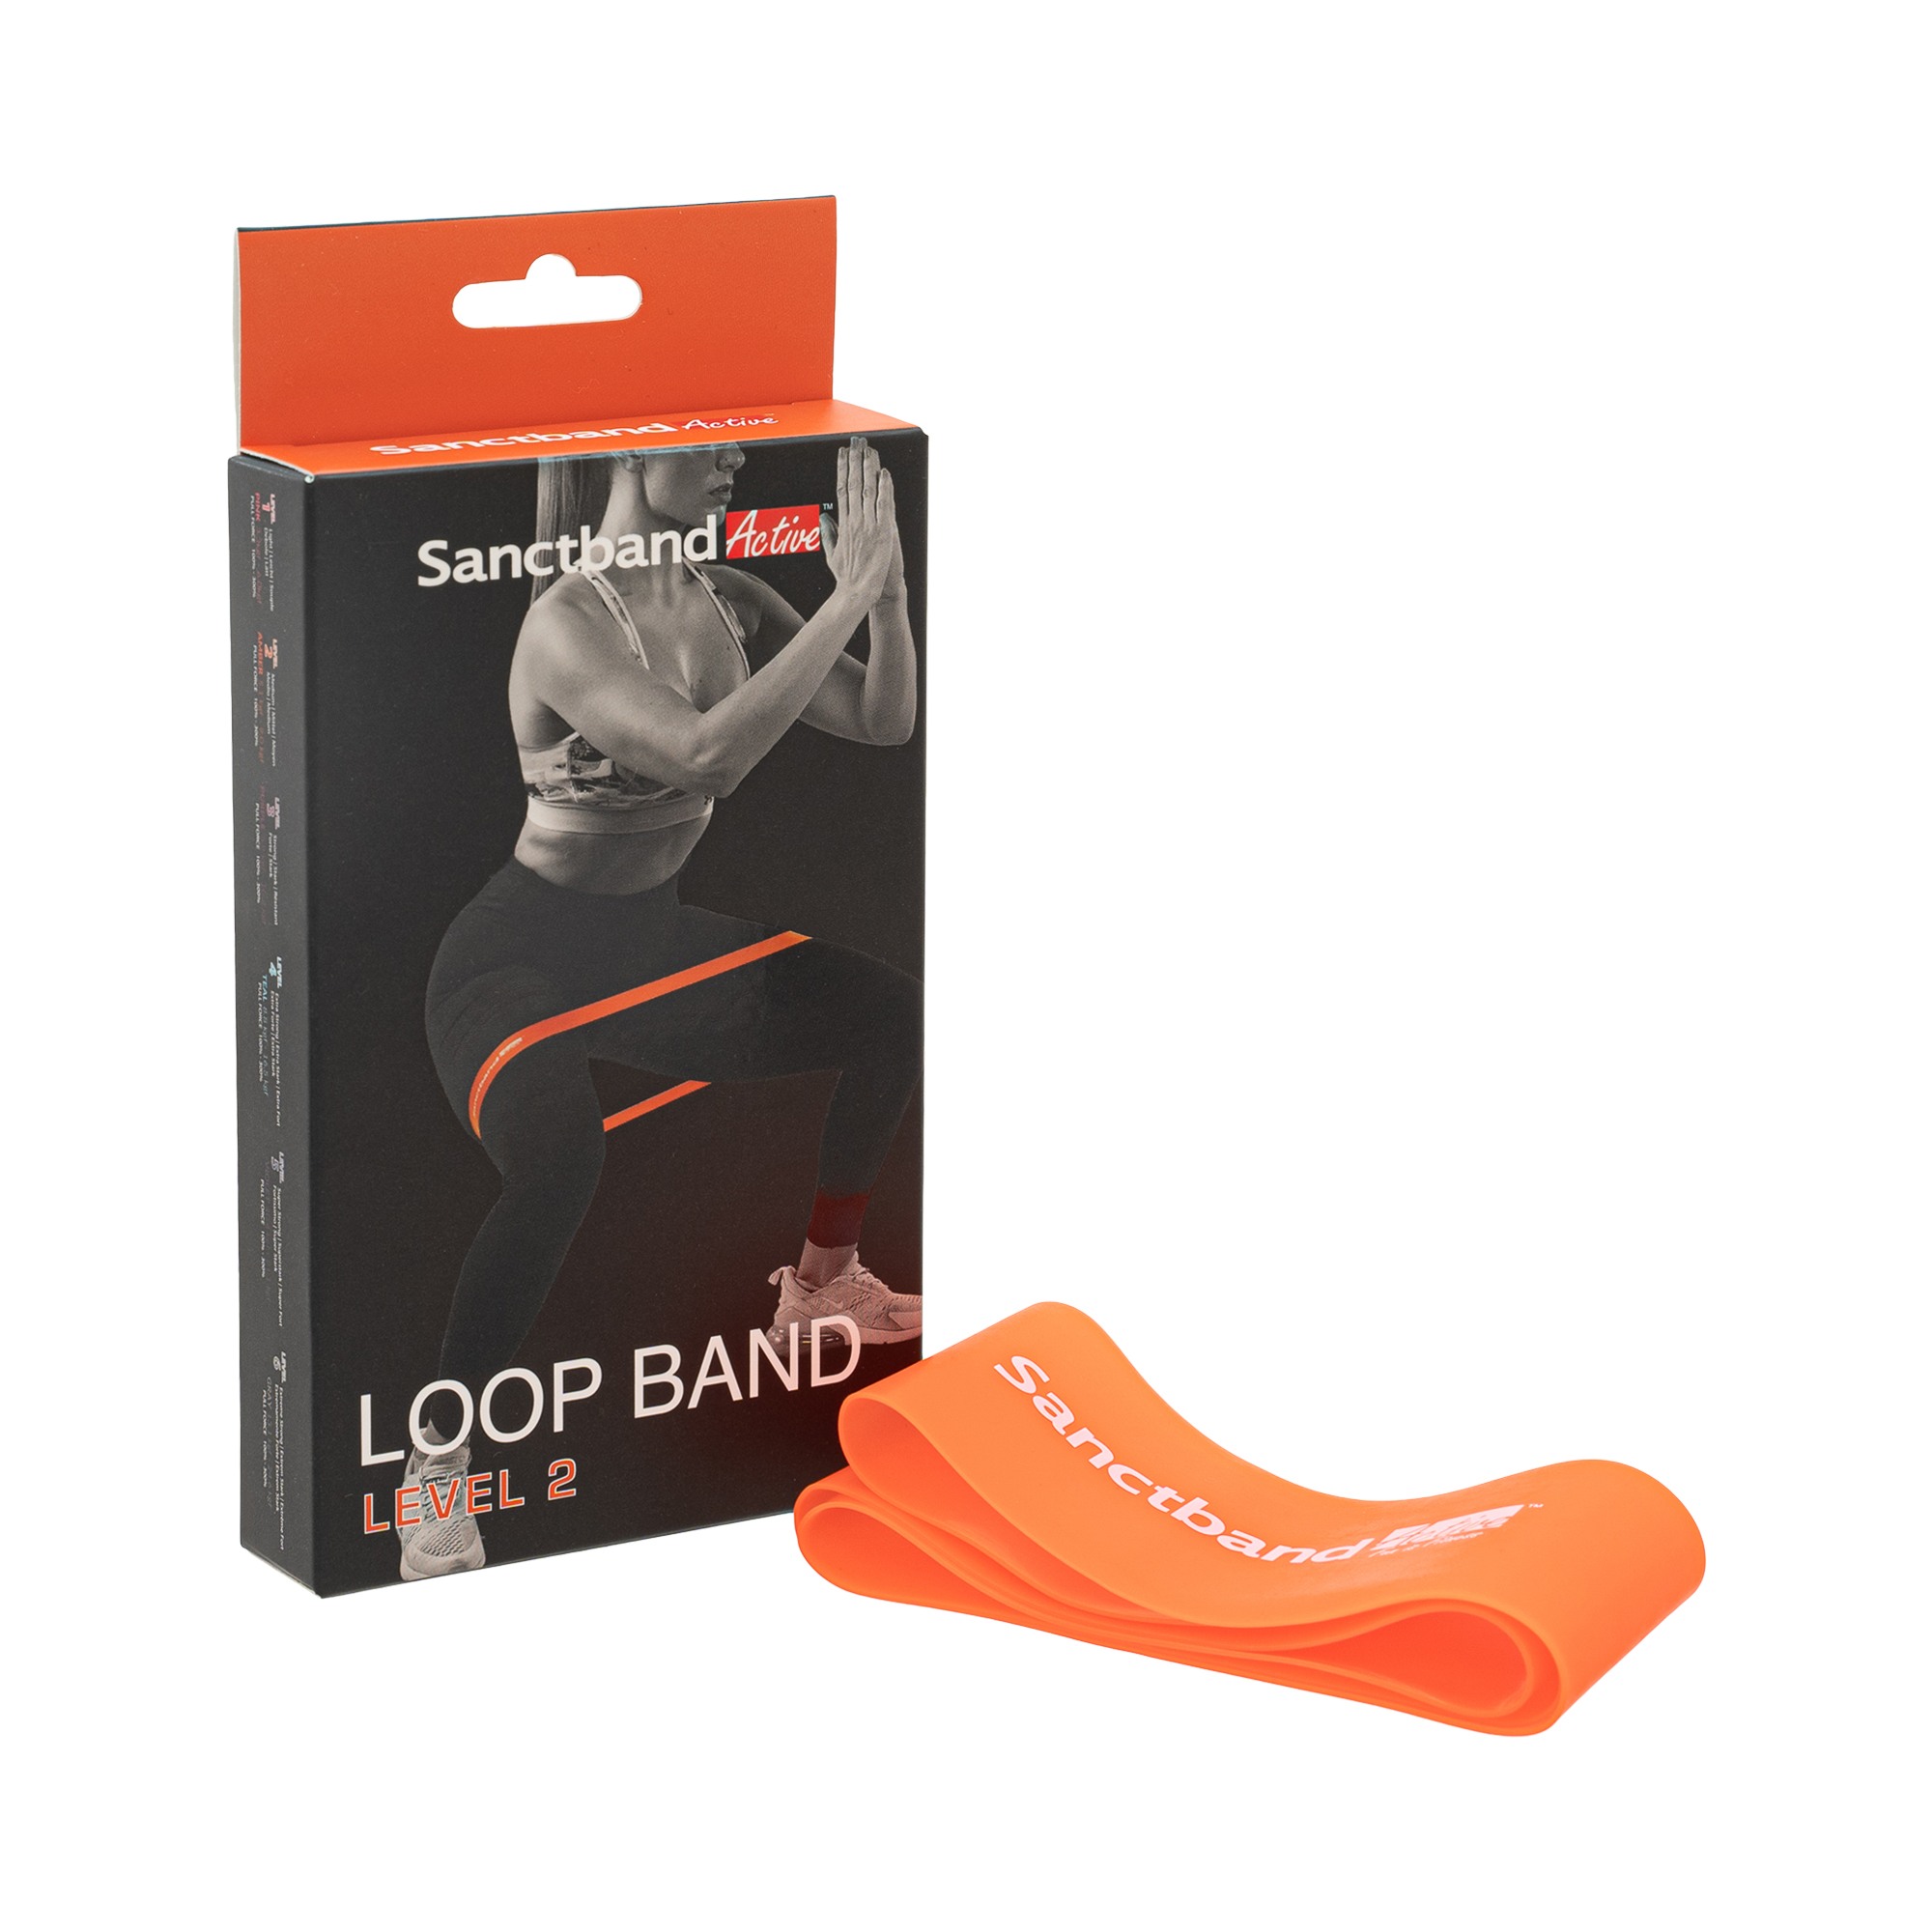 Sanctband Active Loop Fitnessband | Bernstein - mittel | 66 cm Umfang